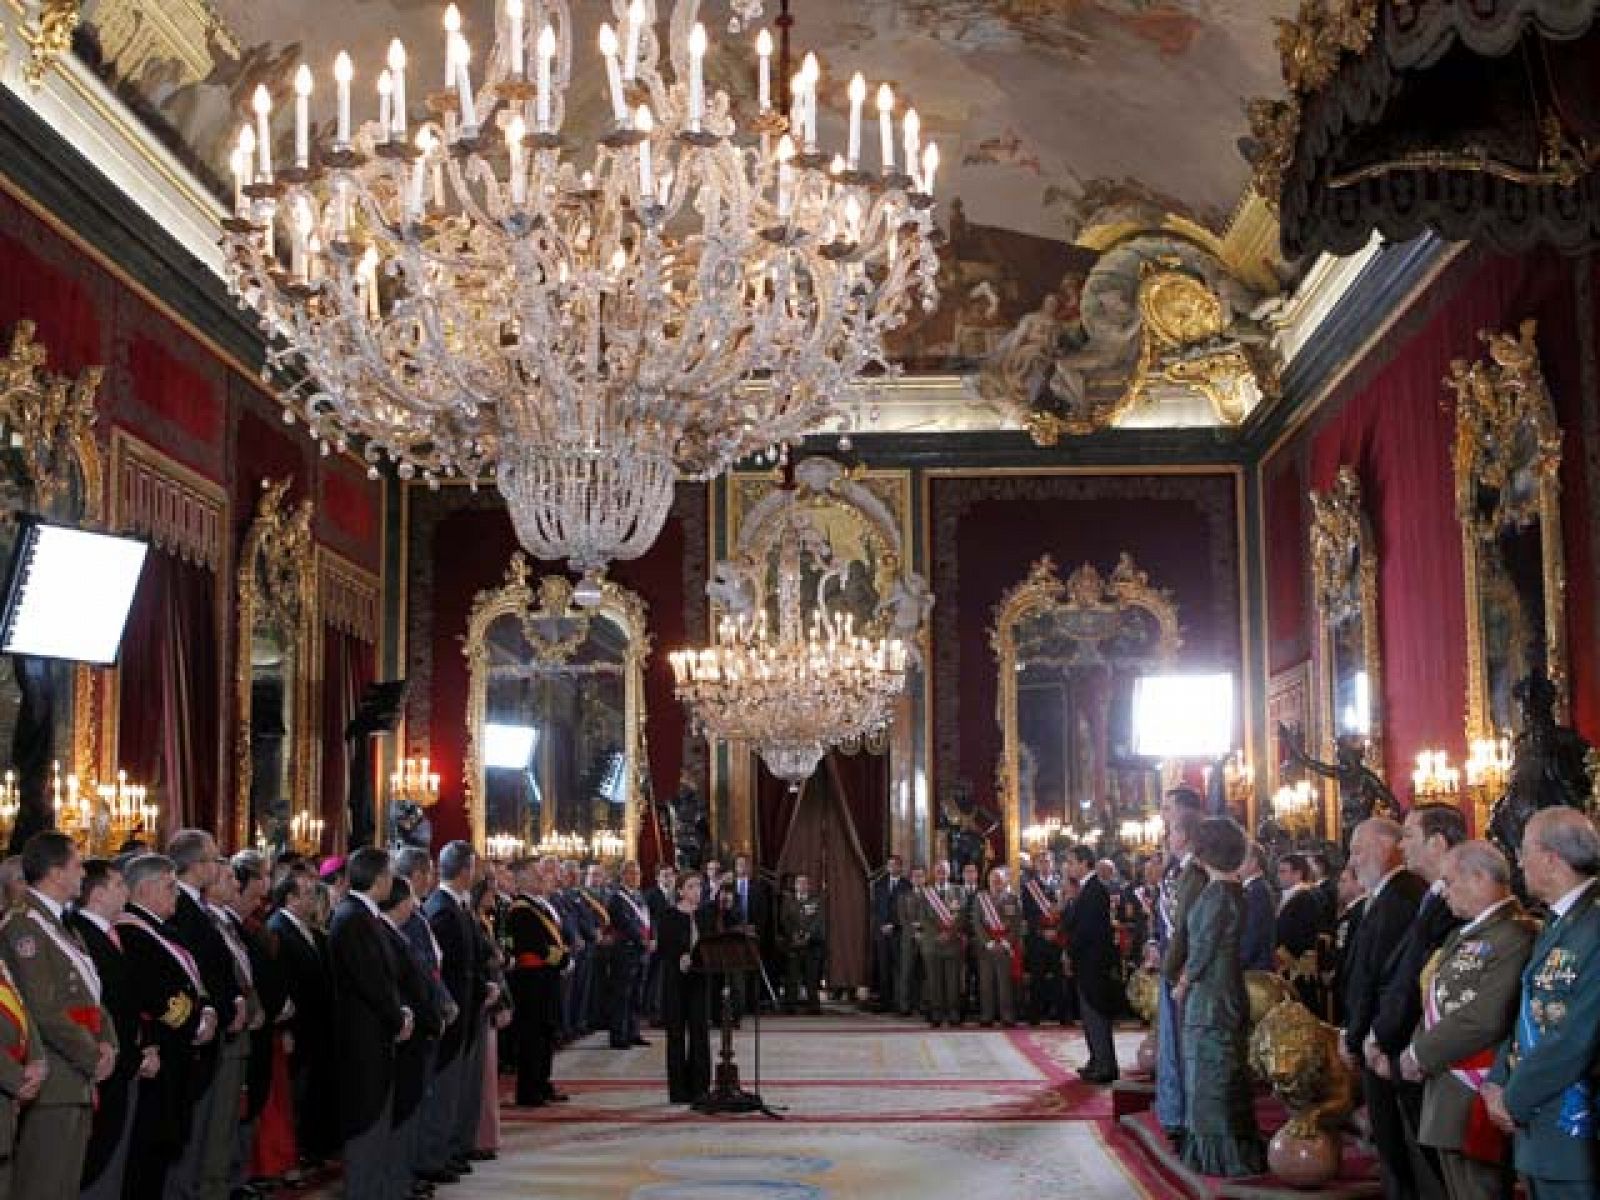 En sus discursos, tanto el Rey como la ministra de Defensa han elogiado la labor de las Fuerzas Armadas, dentro y fuera de España.